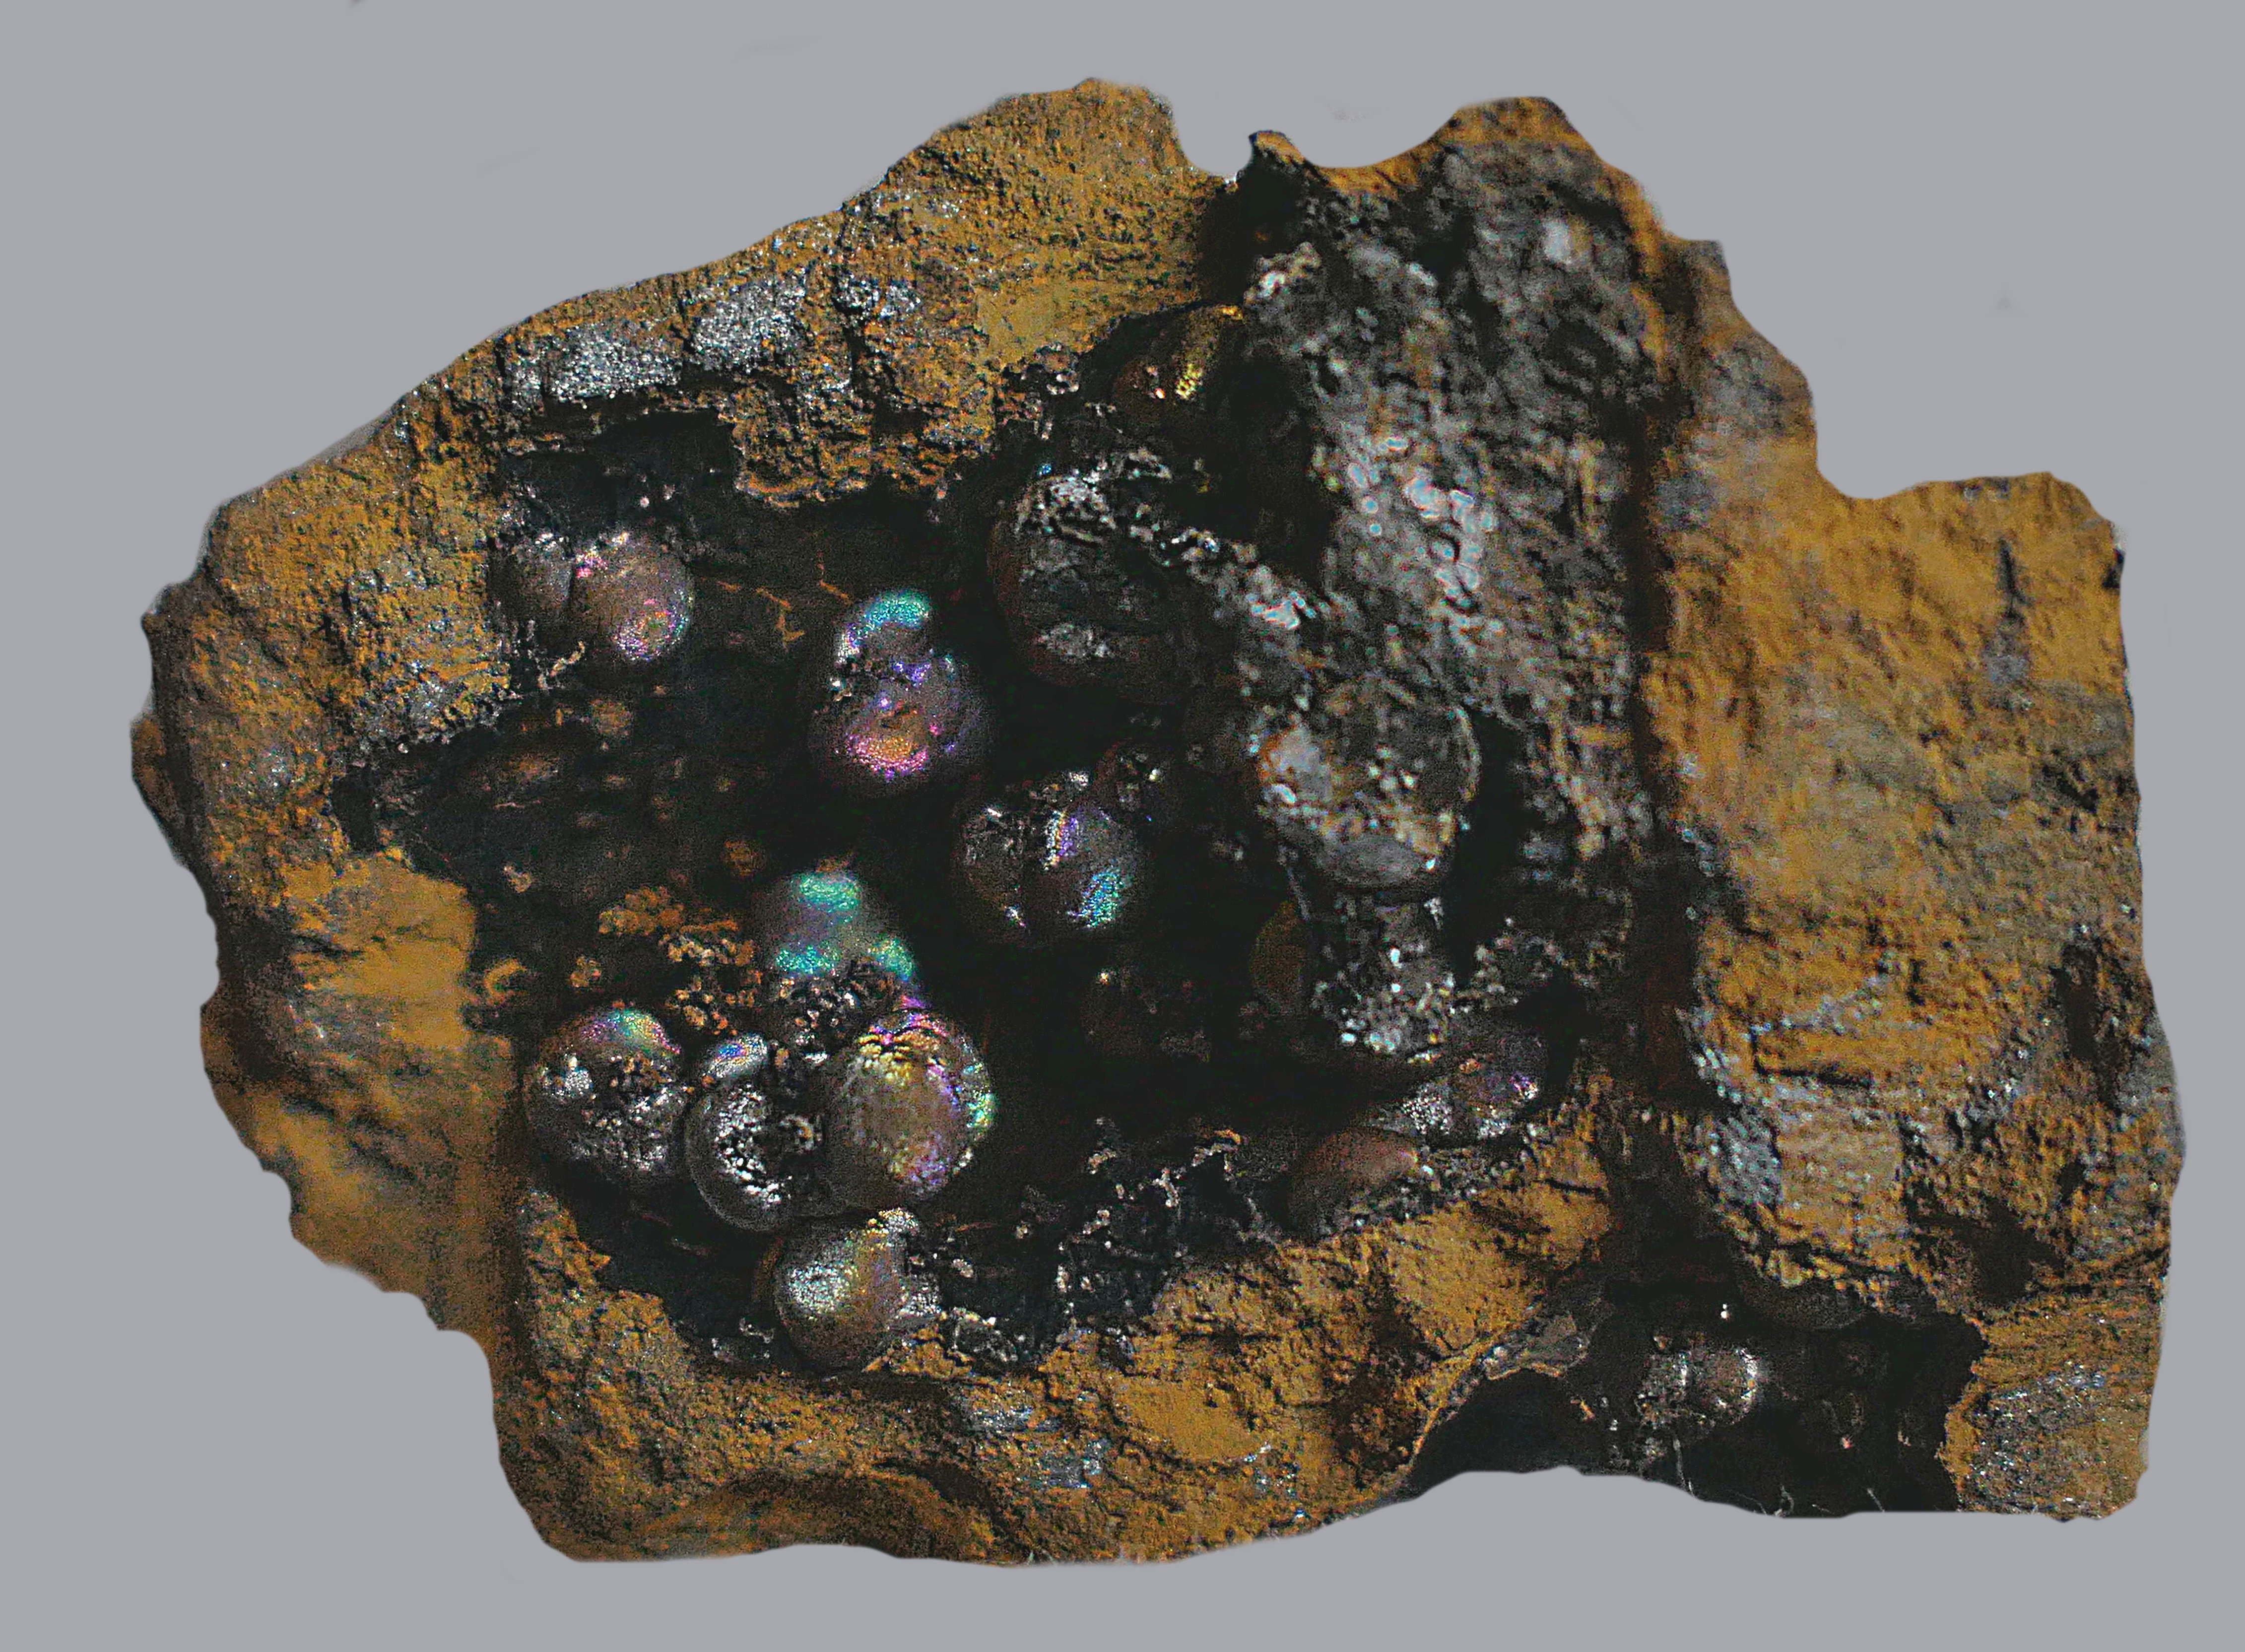 Сидерит (карбонат железа, сферолиты). КМА. Размер 4 см. Фото Морошкина В.В.